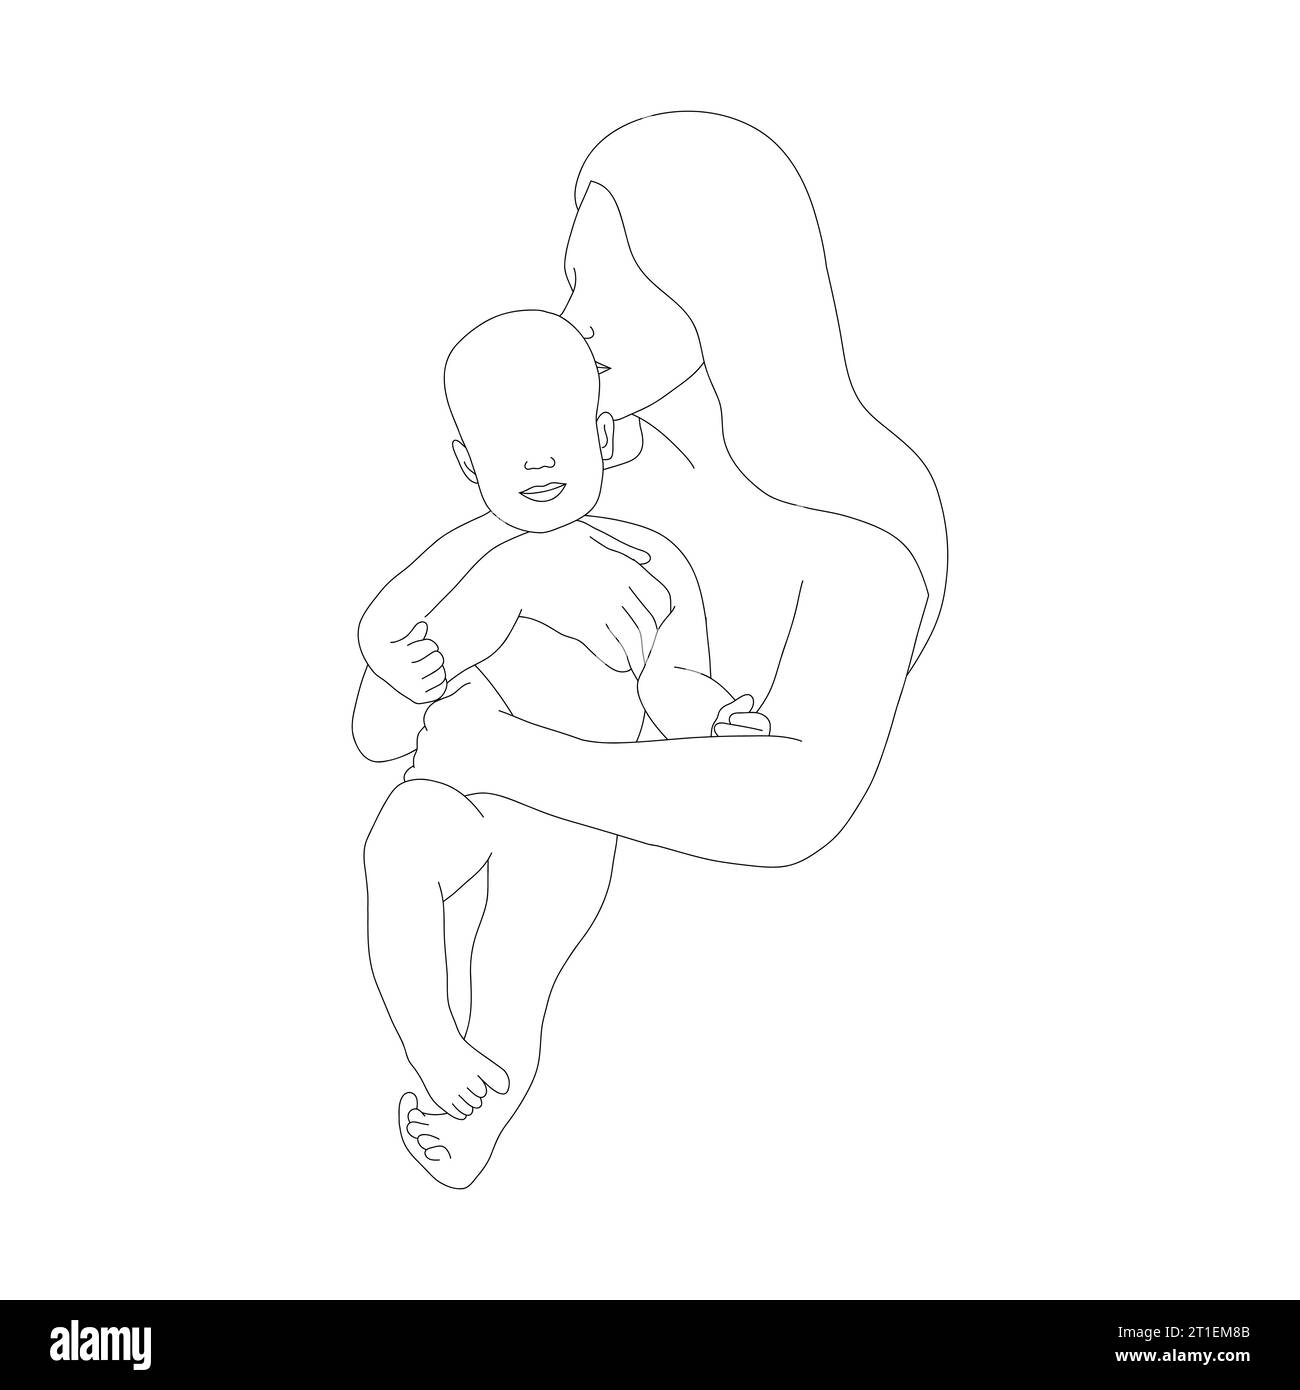 Abstrakte Silhouette der Familie. Glückliche Mutter küsst ihr neugeborenes Baby. Einzeilige Art. Minimalistische Vektorillustration. Mutter und Kind im linearen Stil Stock Vektor